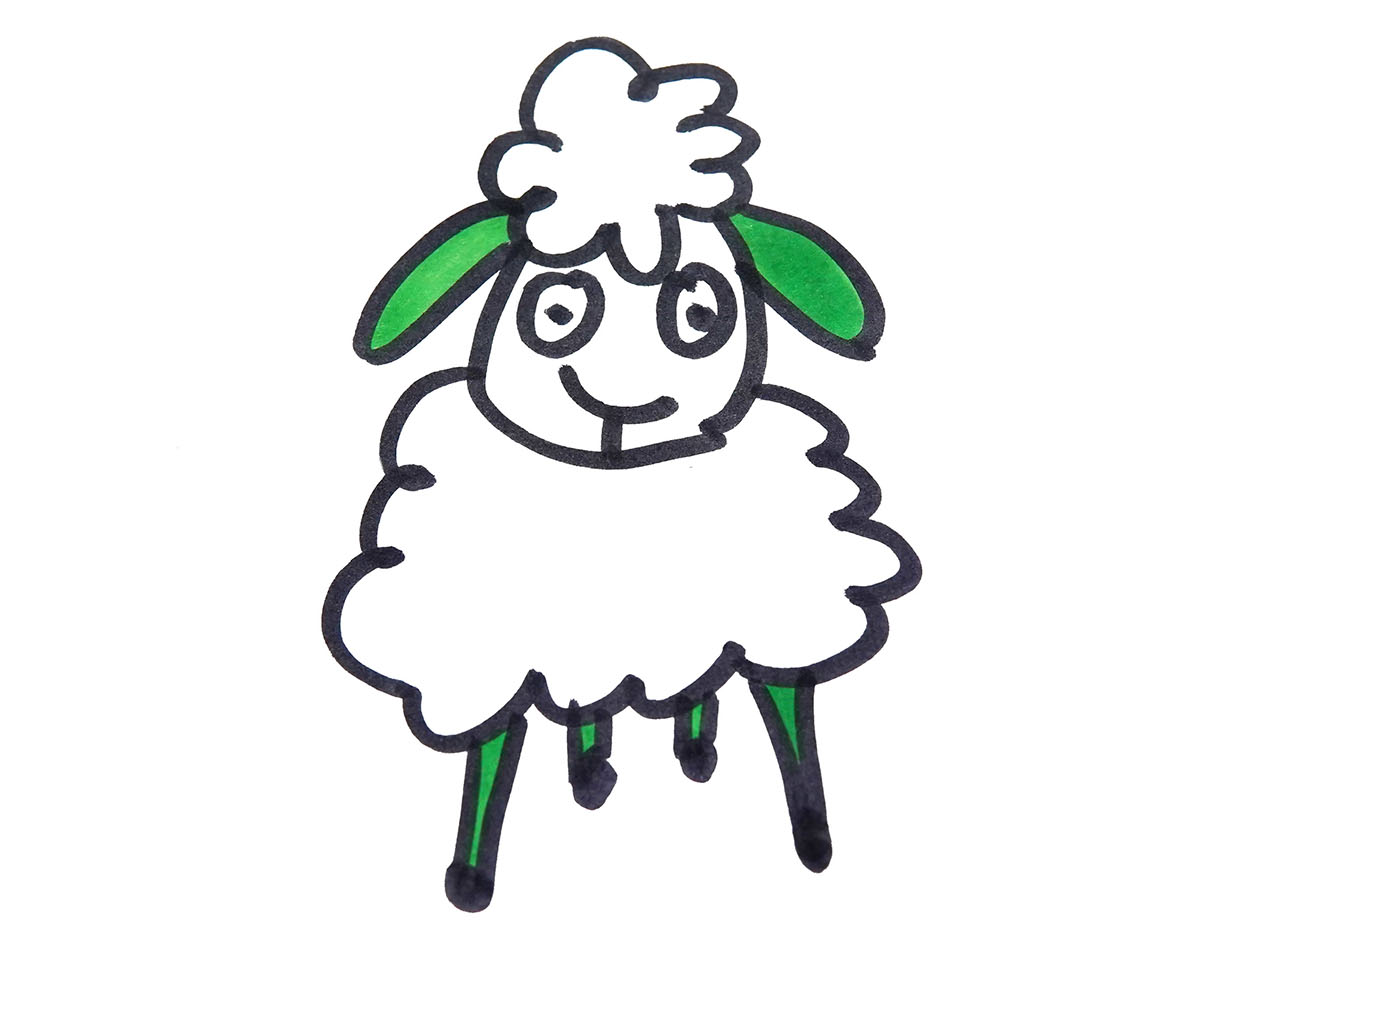 有颜色小羊的画法图解教程 简单漂亮简笔画步骤图片 - 有点网 - 好手艺